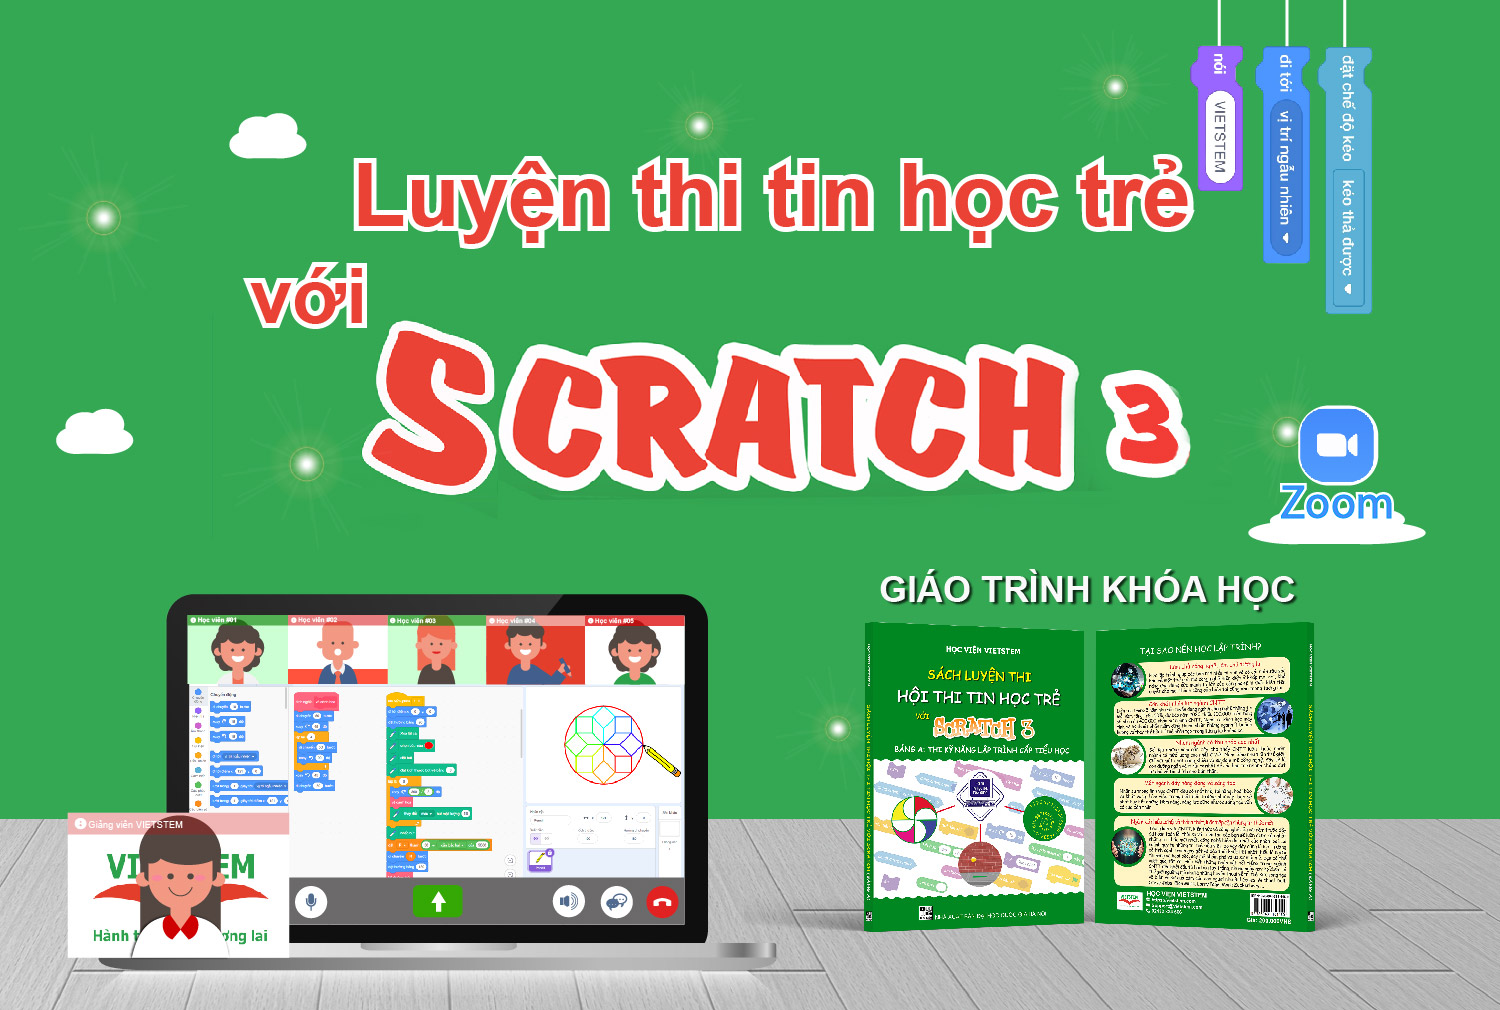 Luyện thi Tin học trẻ với Scratch trực tuyến cùng giảng viên